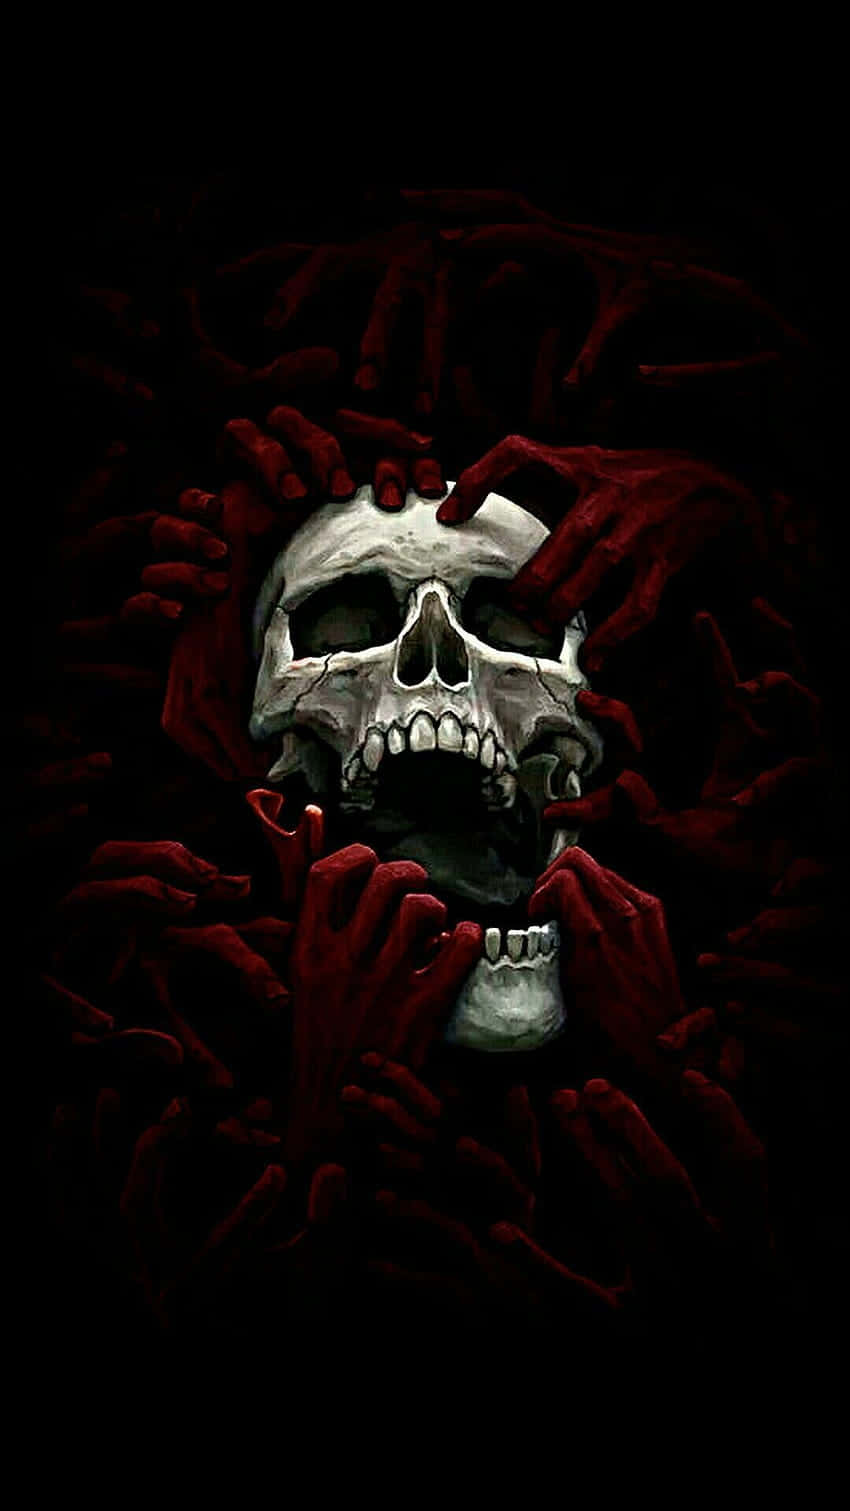 "Thrilling Skull Appearance" Wallpaper